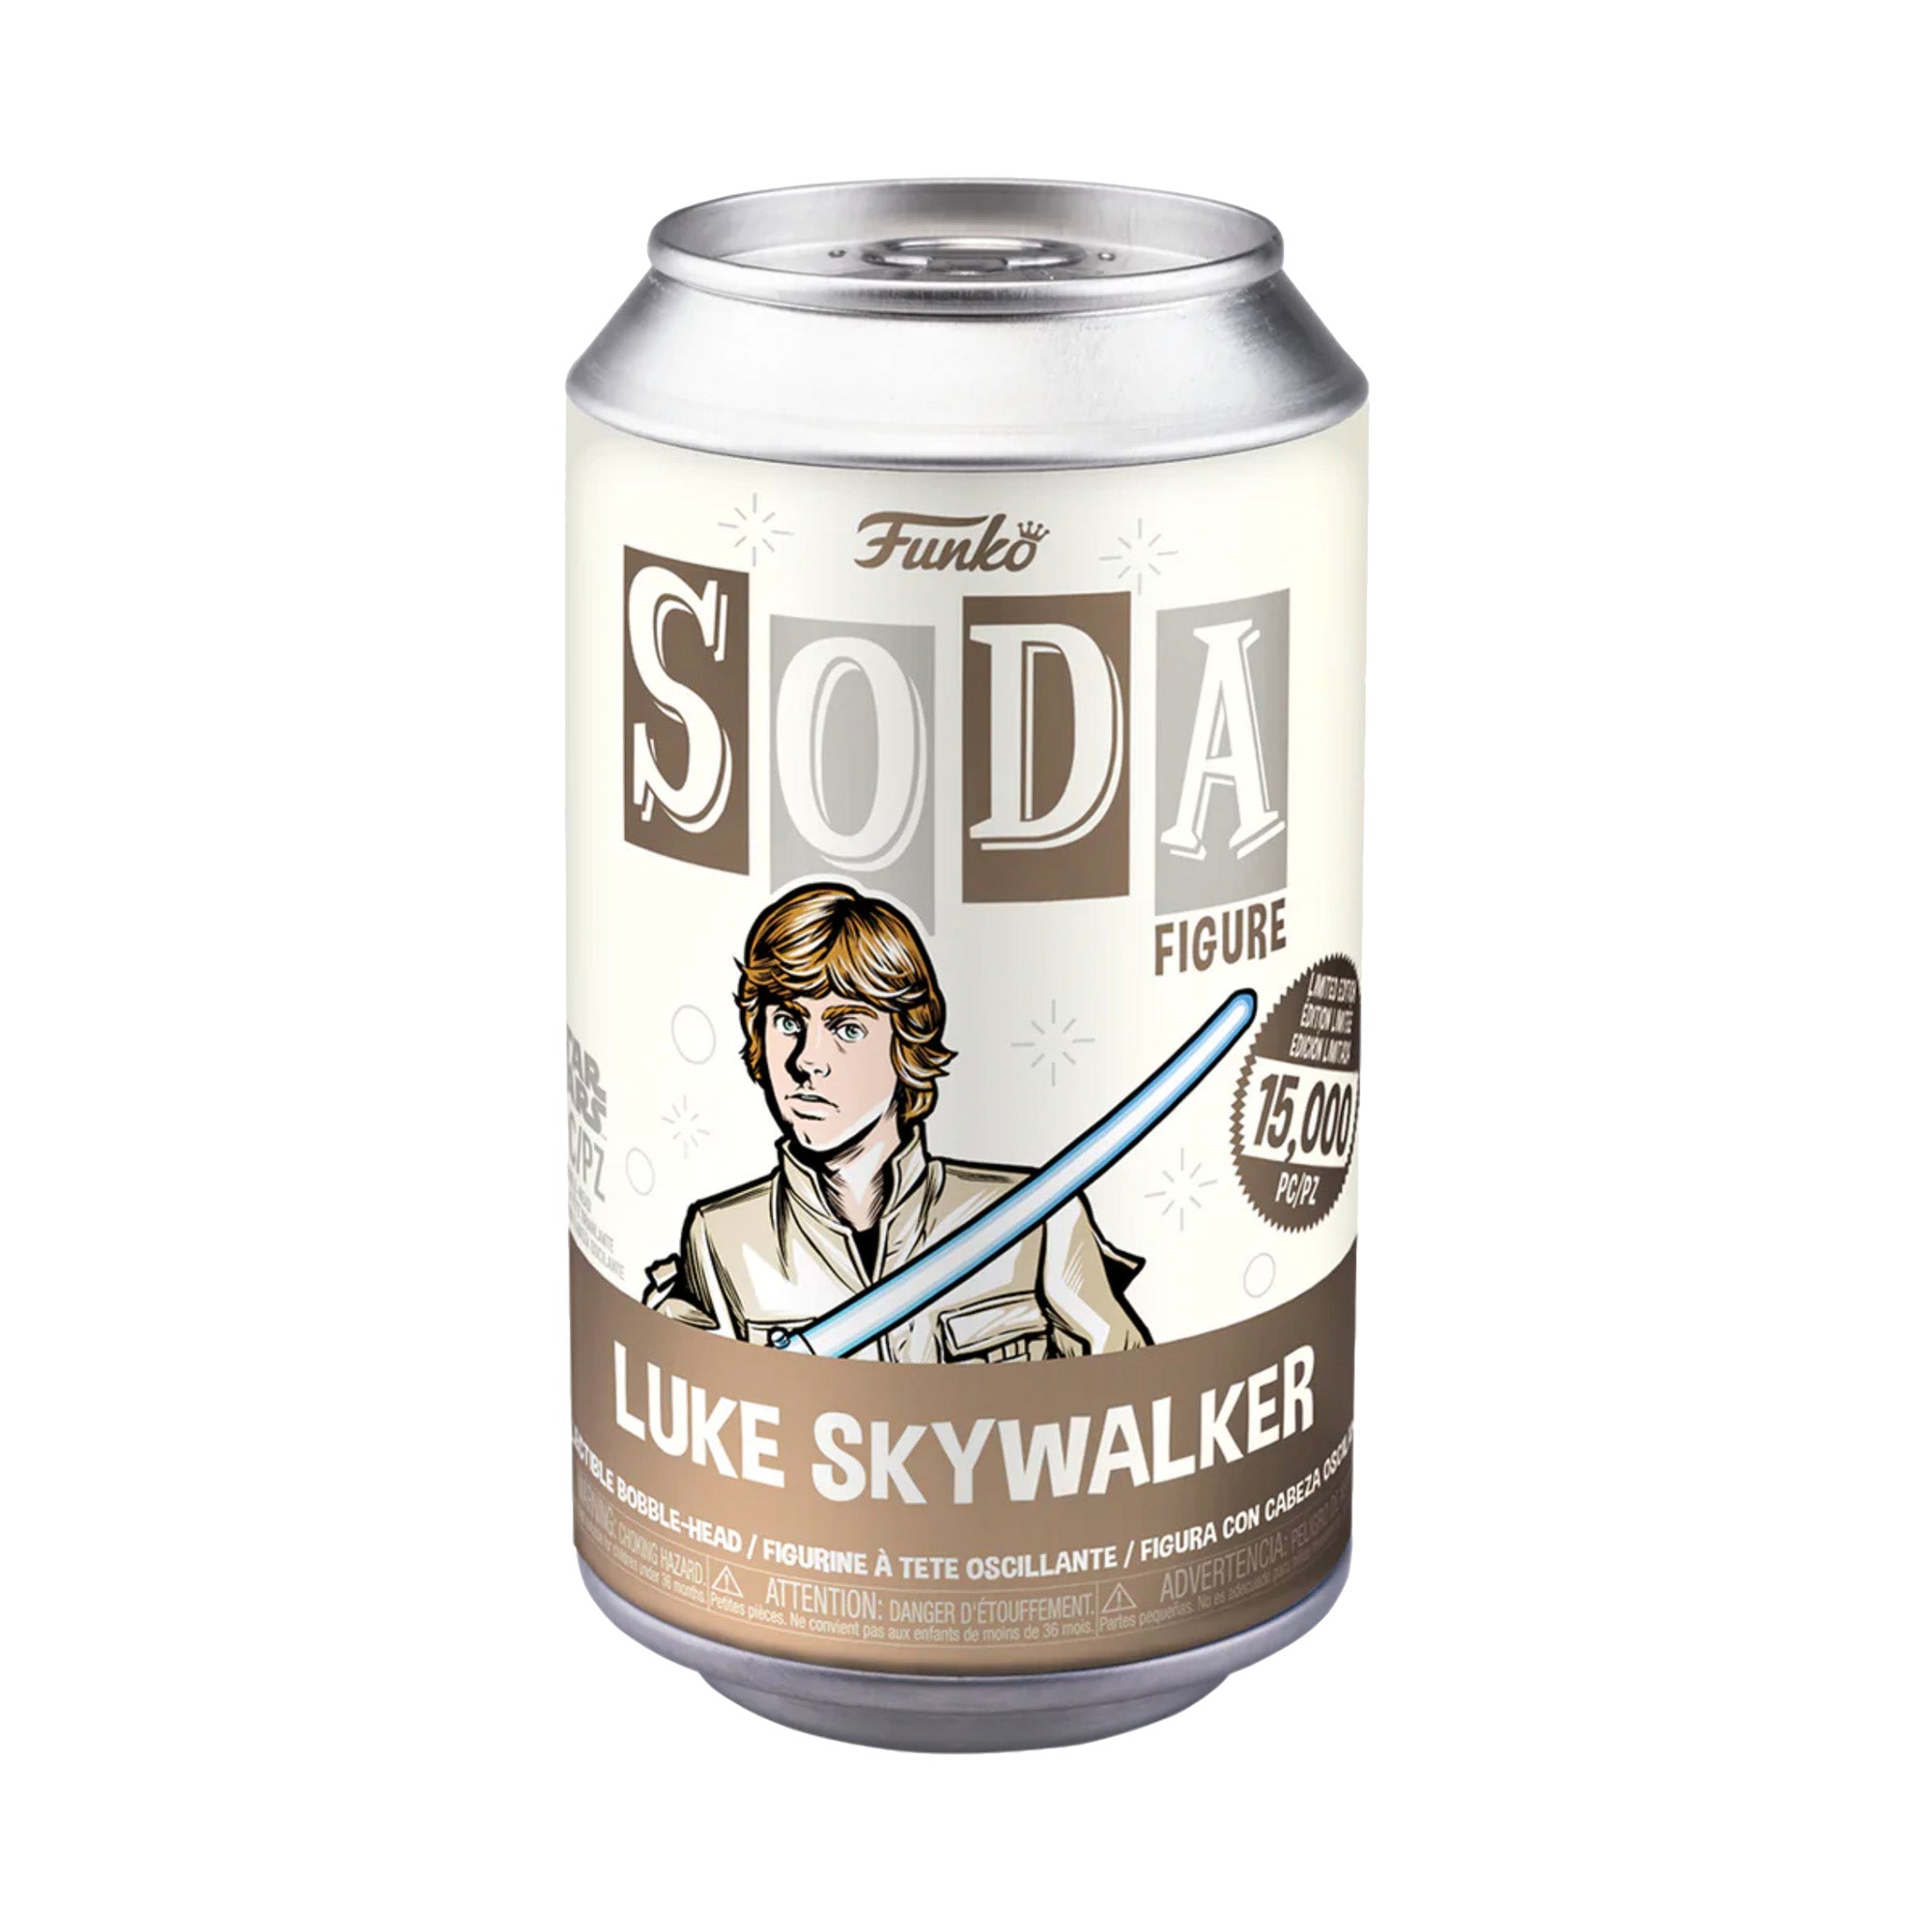 Funko Vinyl SODA: Star Wars - Luke Skywalker 15,000 Limited